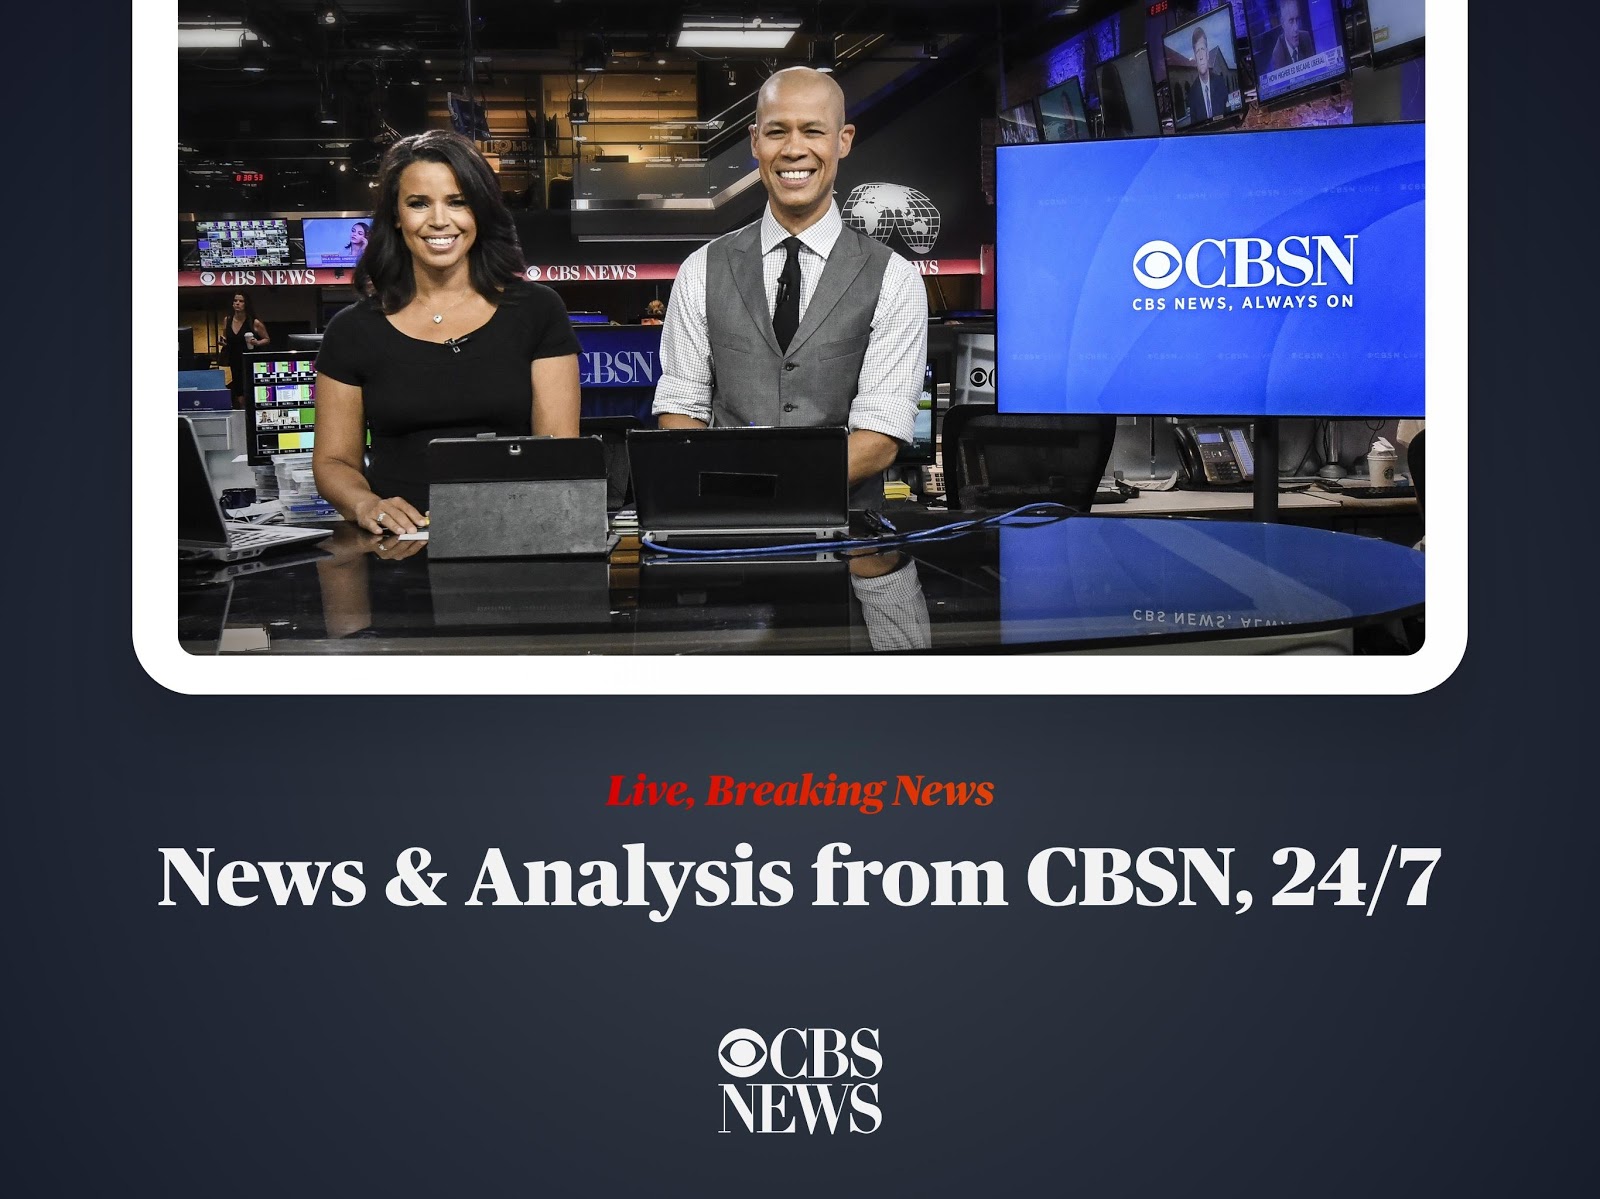 Servicio de noticias por streaming CBSN disponible a nivel internacional